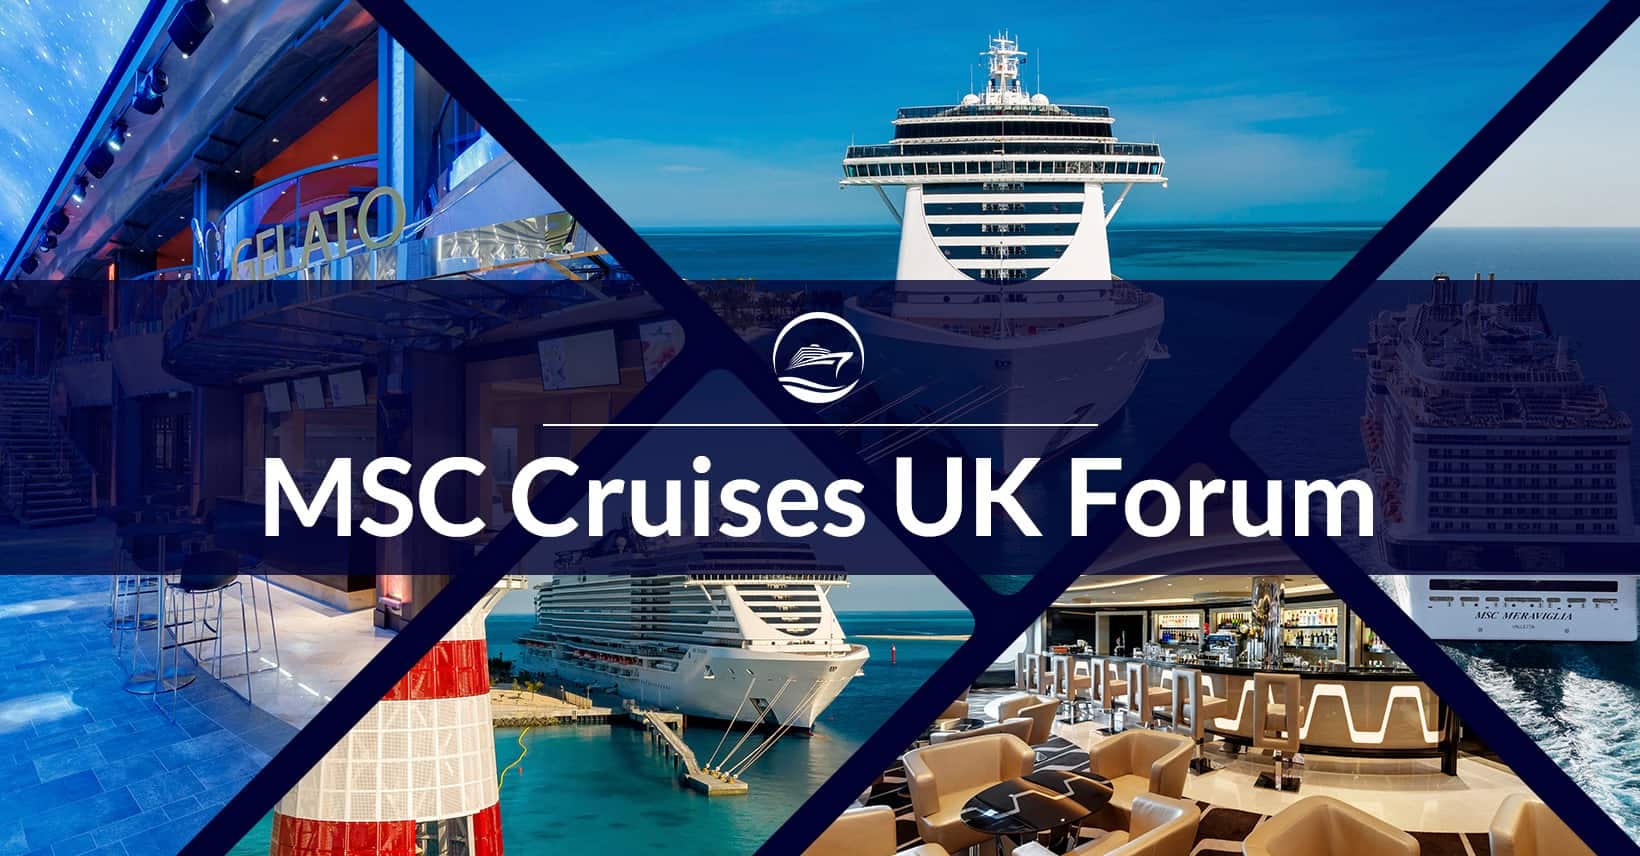 email address for msc cruises uk